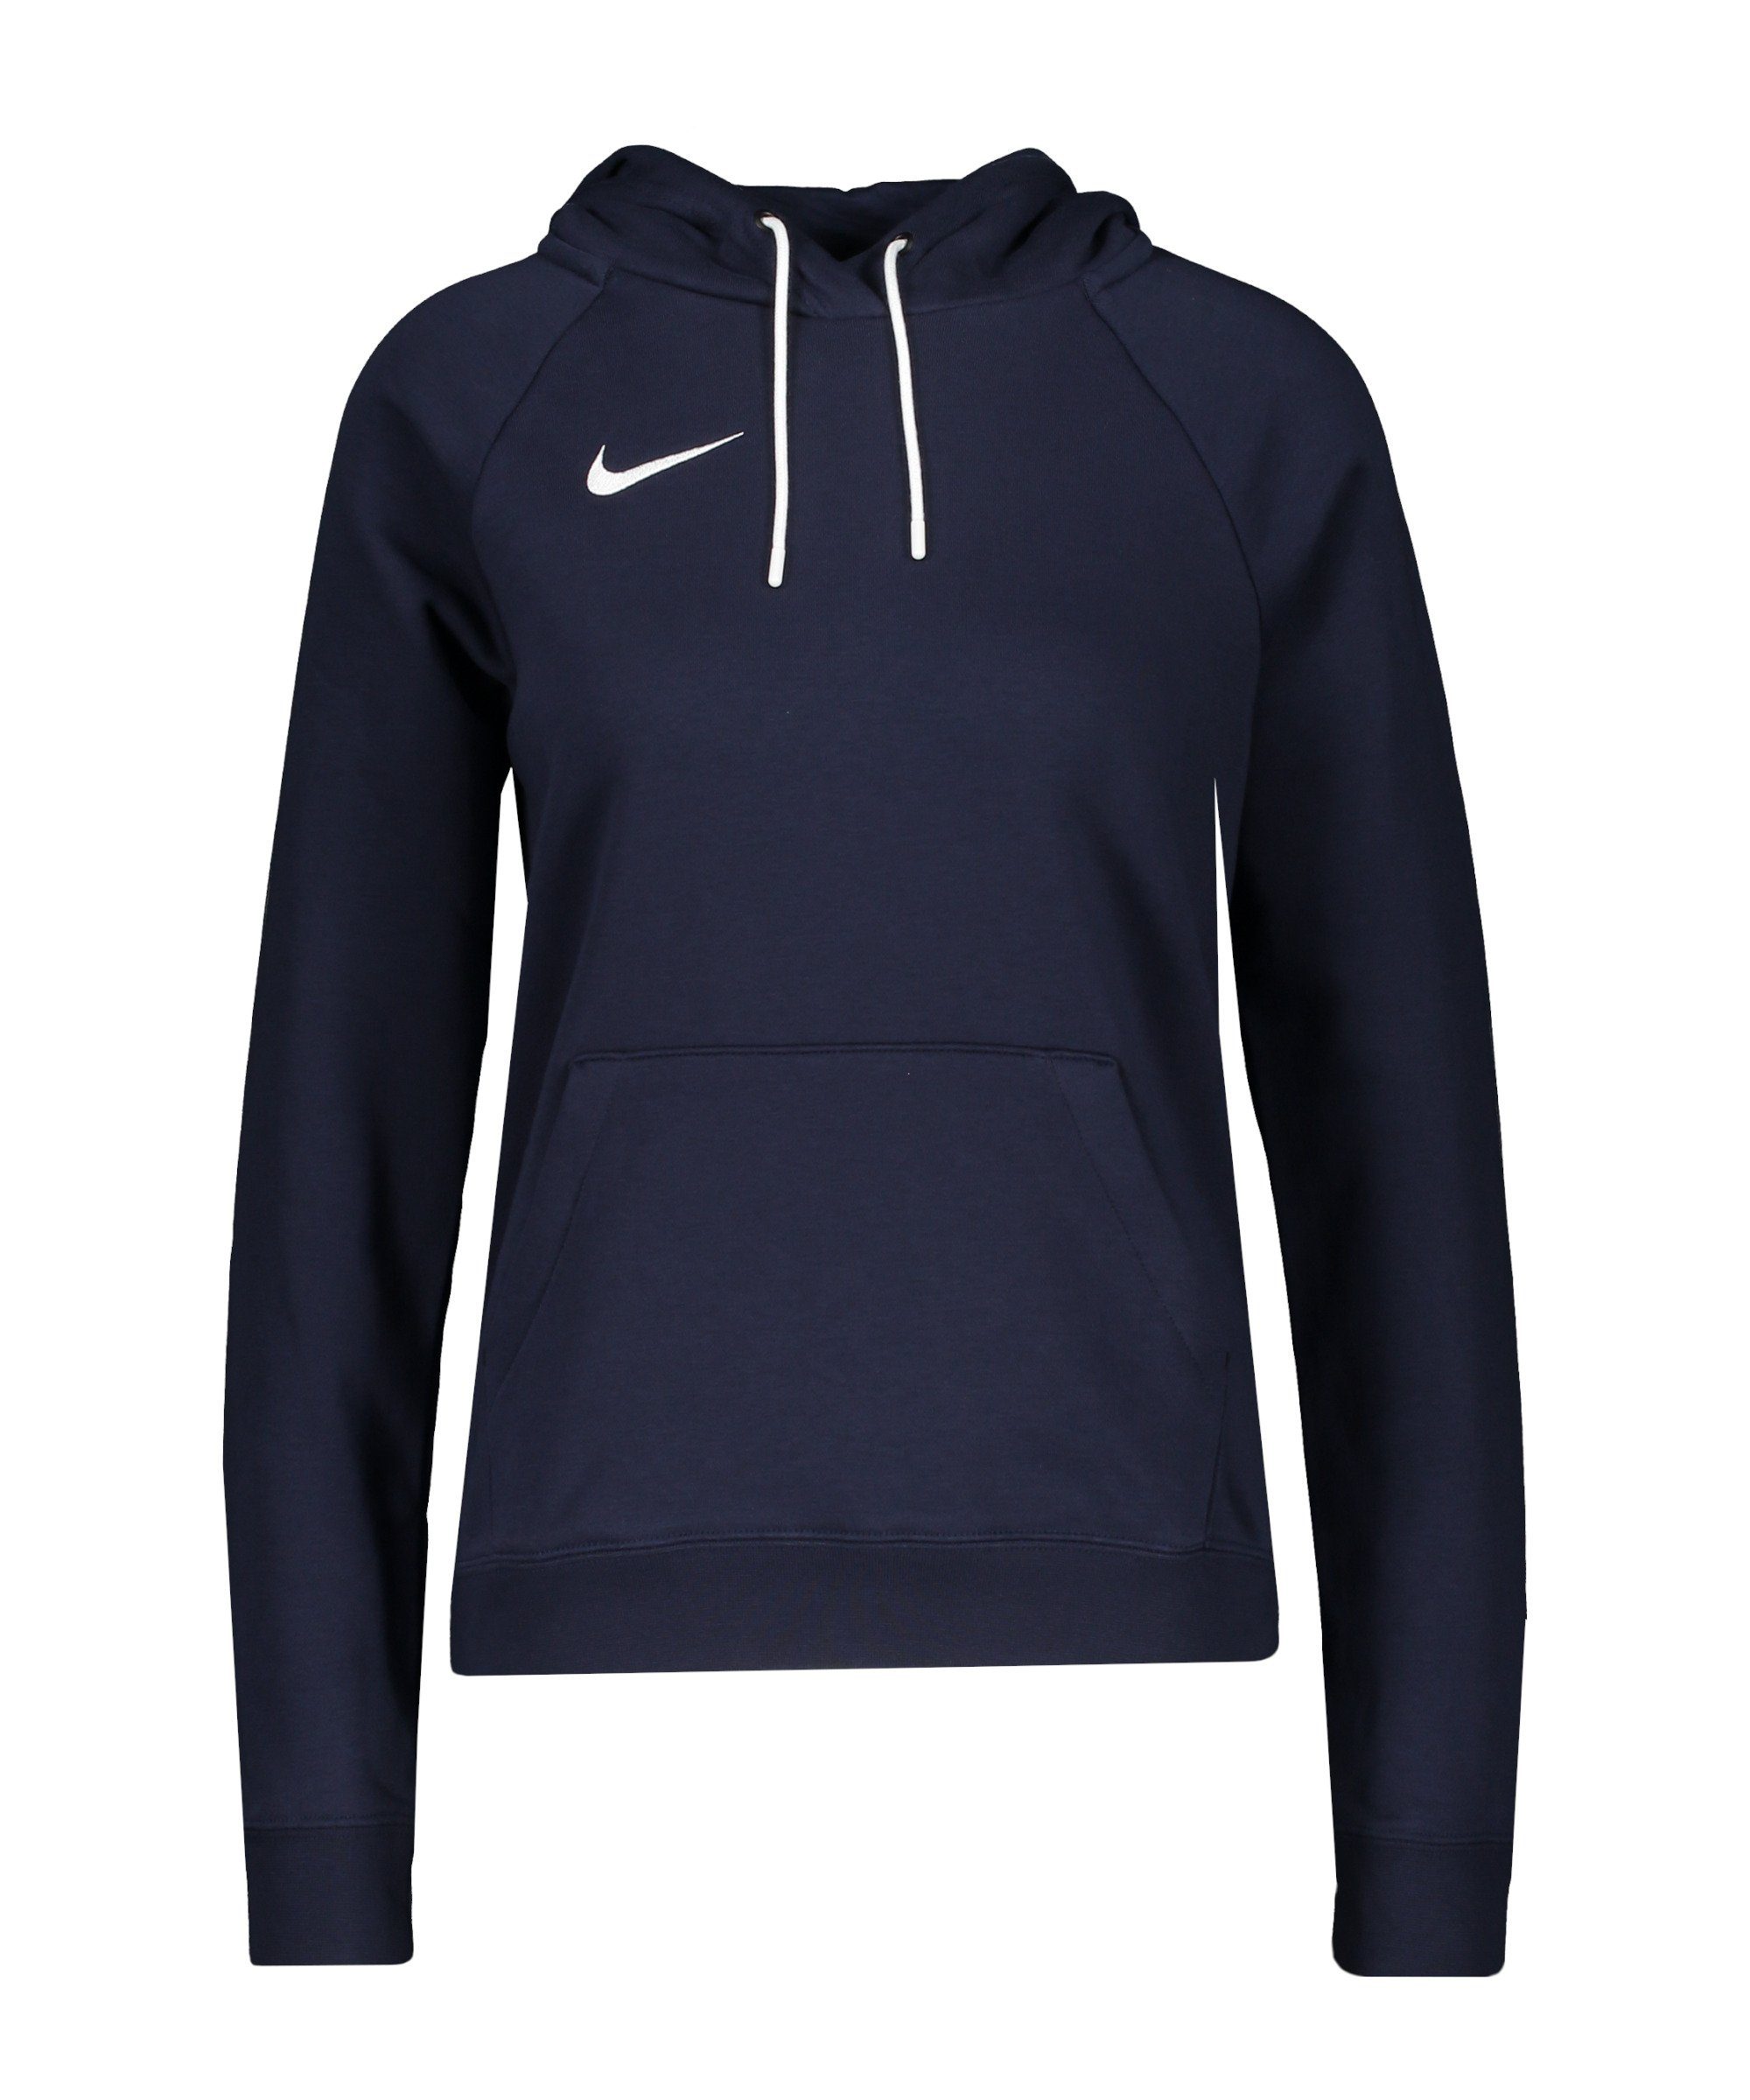 Hoody Sweater Park 20 Nike blauweiss Damen Fleece